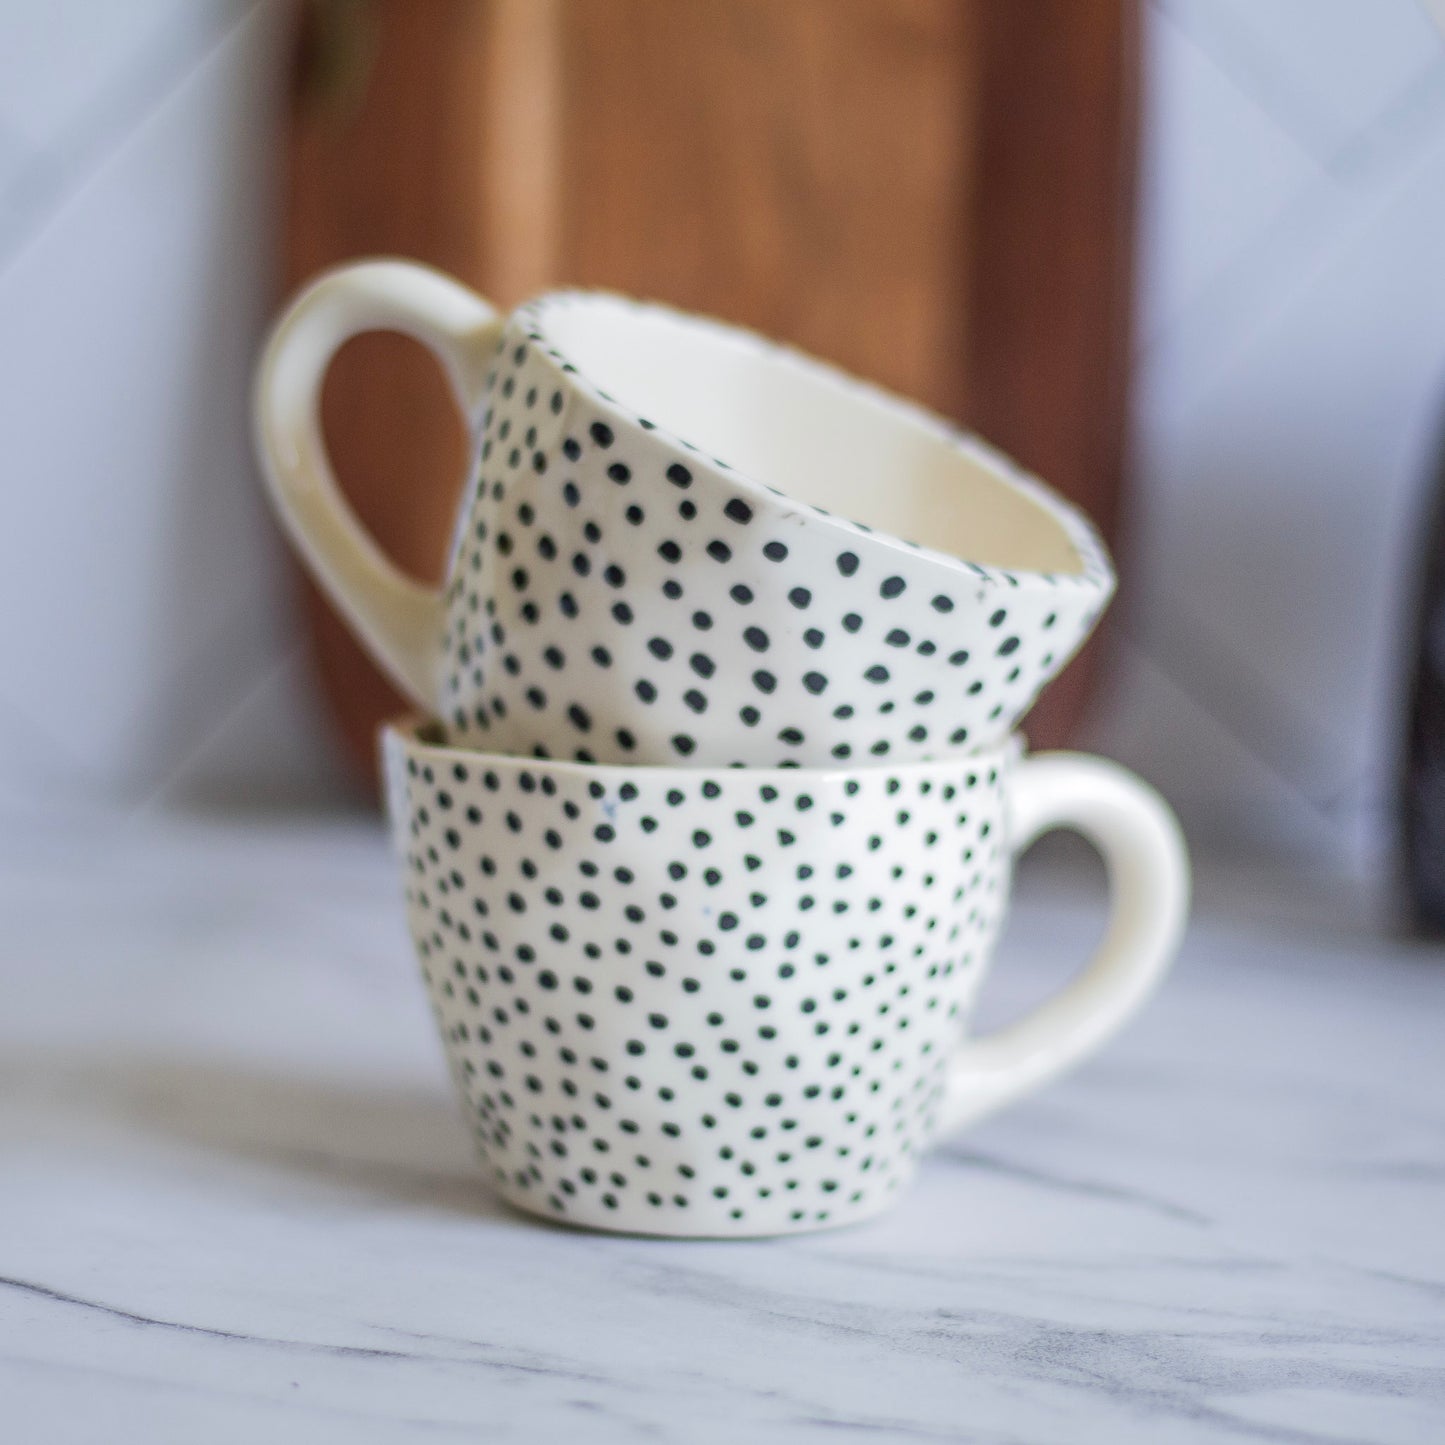 Small Polka Dot Coffee Mug